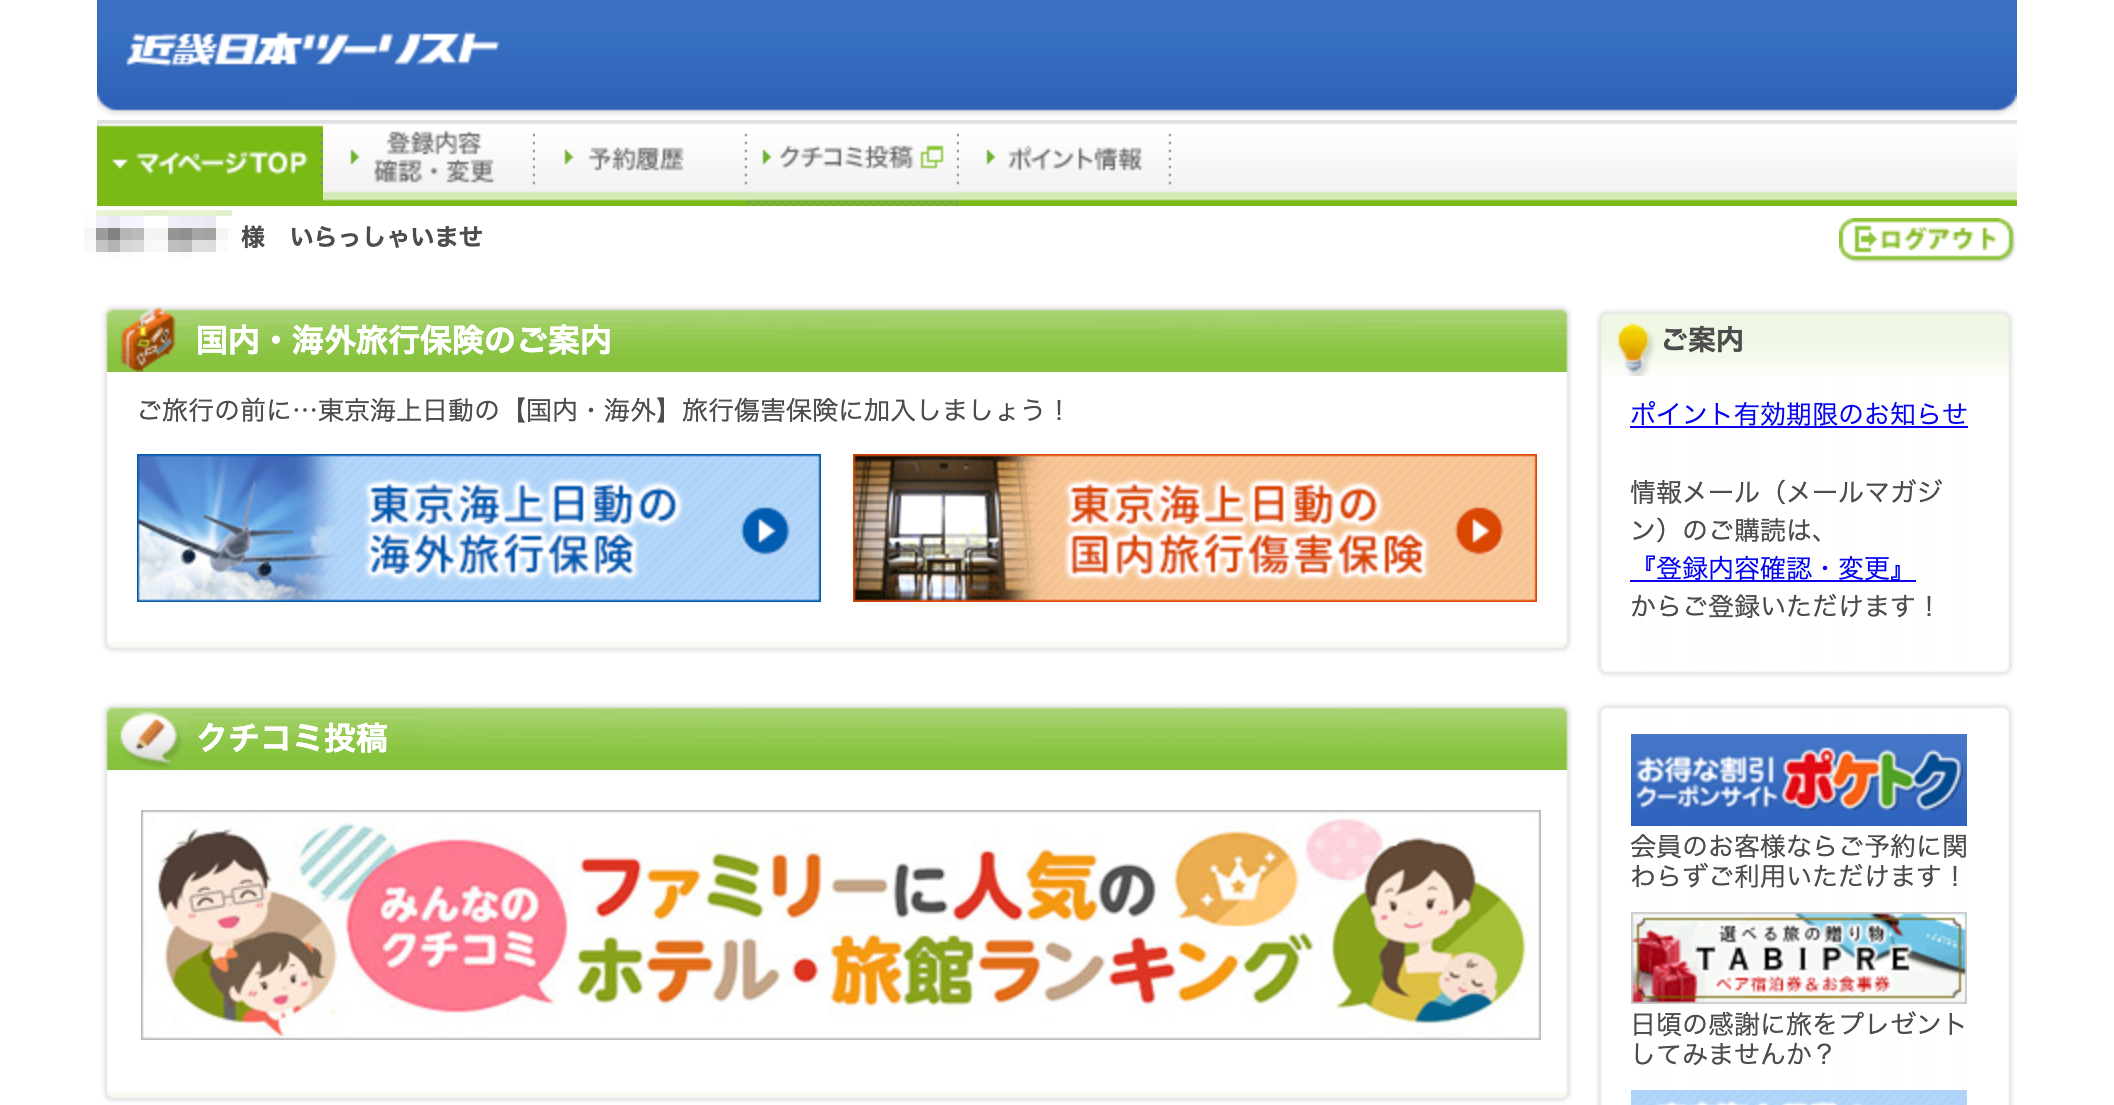 近畿日本ツーリストのマイページ